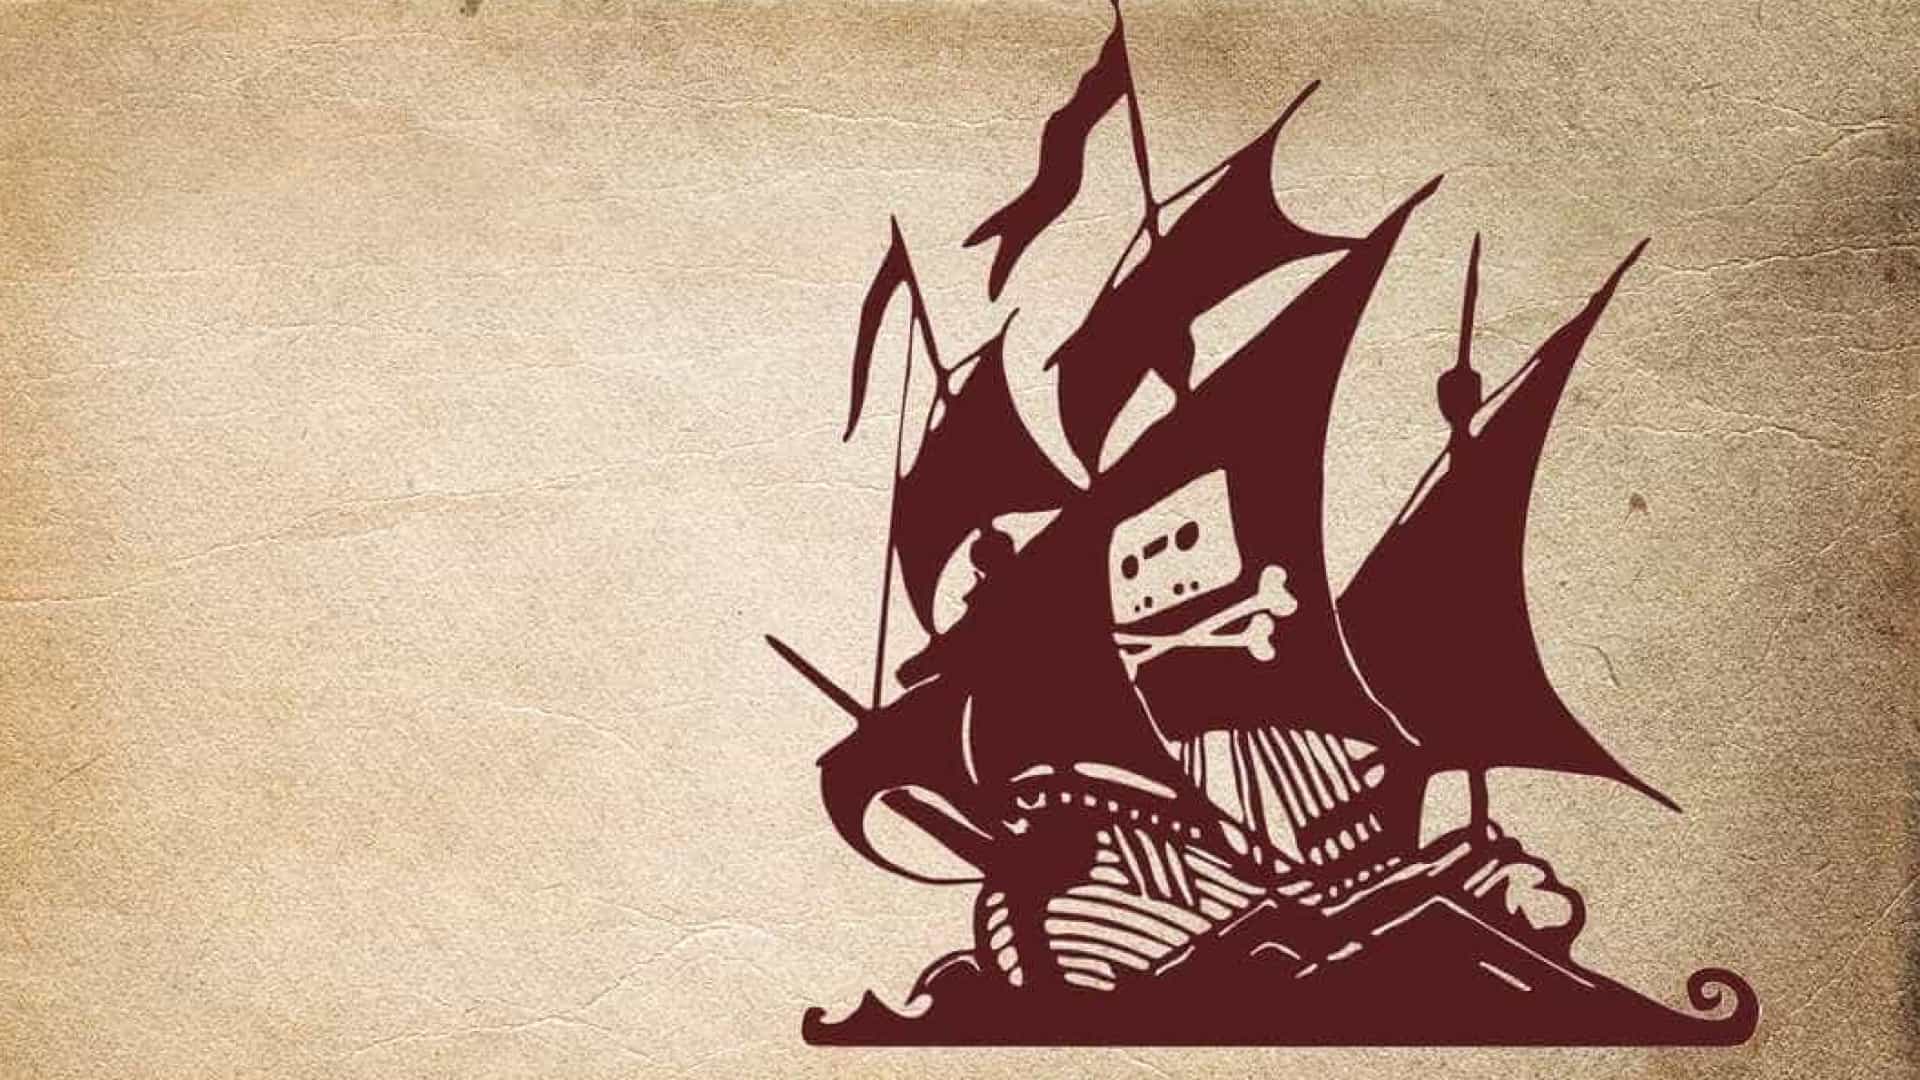 Tudo sobre The Pirate Bay - História e Notícias - Canaltech